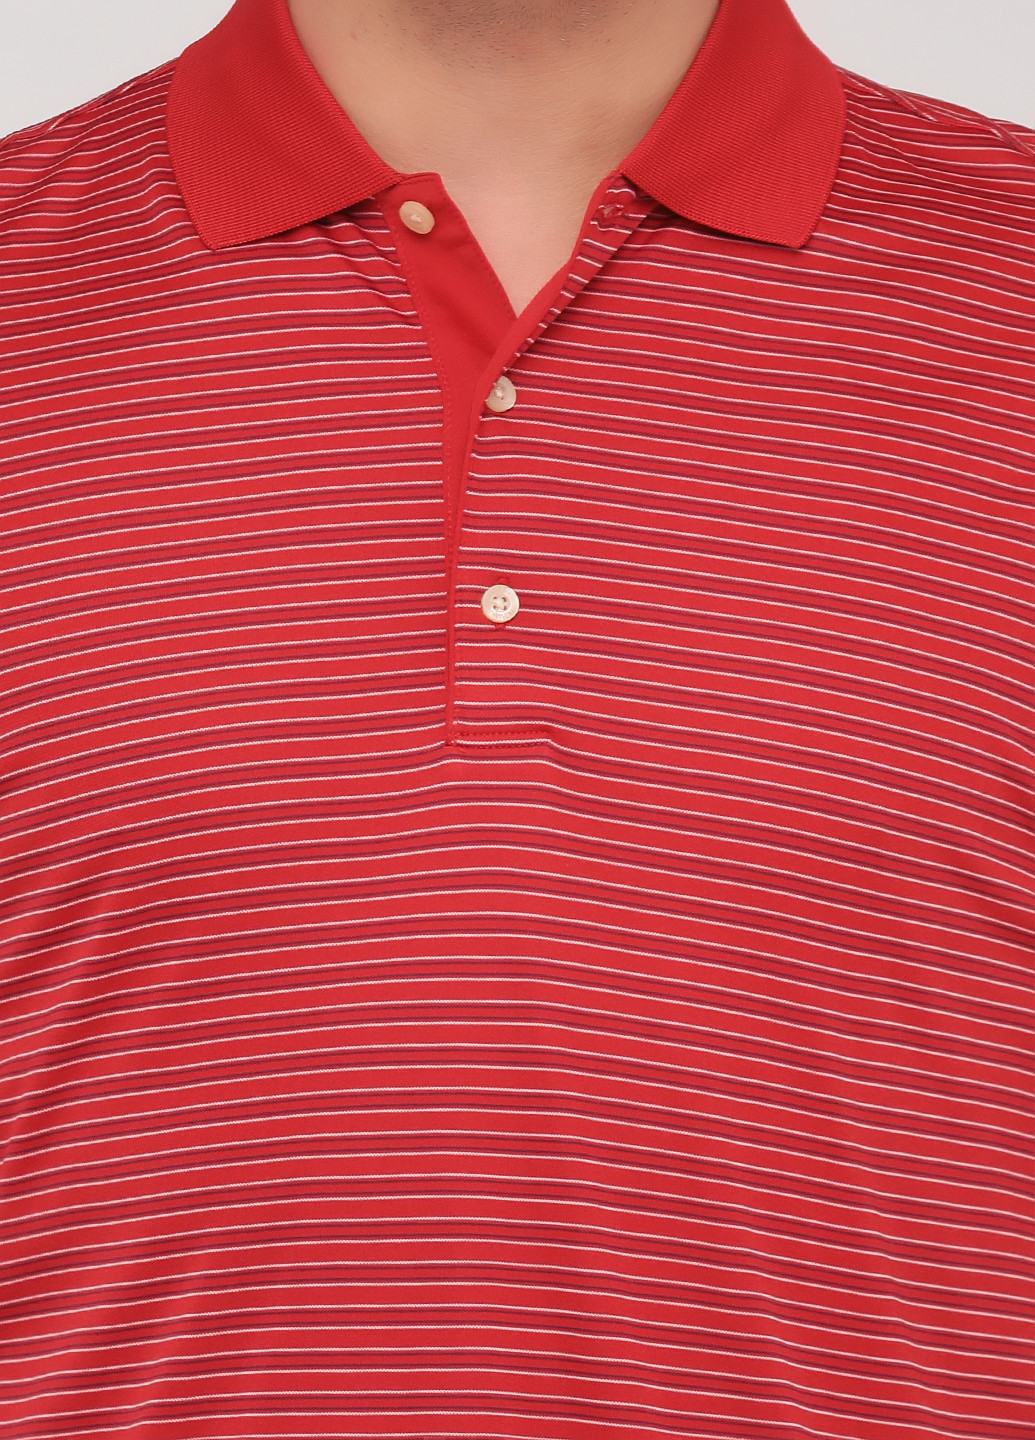 Темно-красная футболка-поло для мужчин Greg Norman в полоску